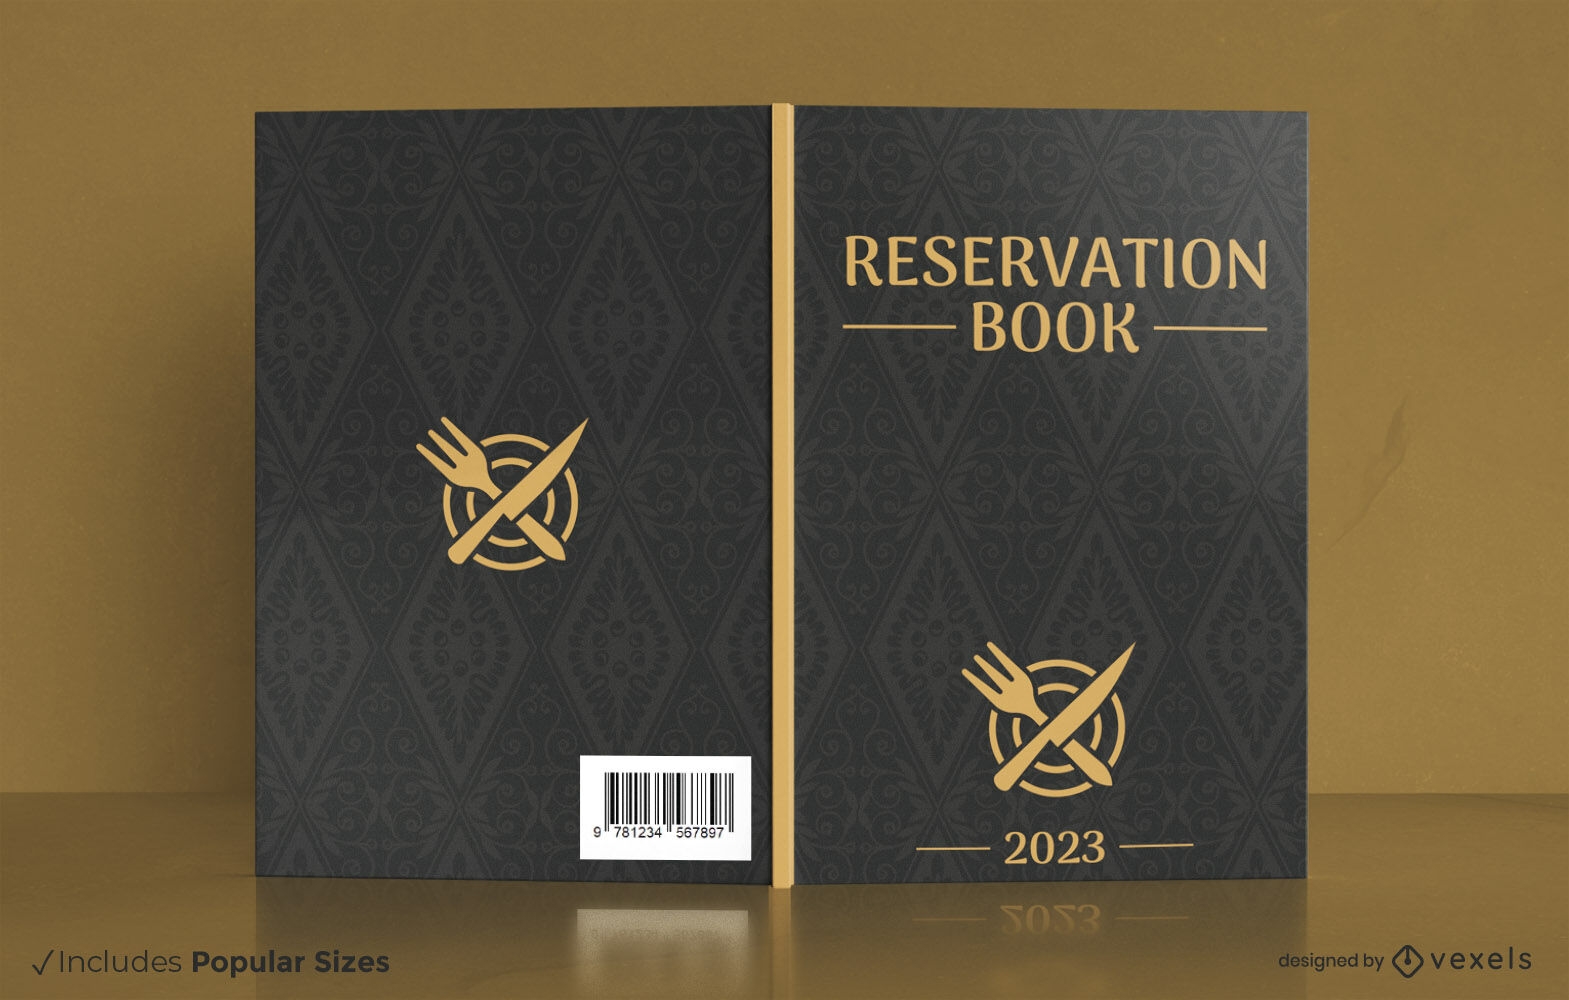 Design de capa de livro dourado de resevera??o de restaurante